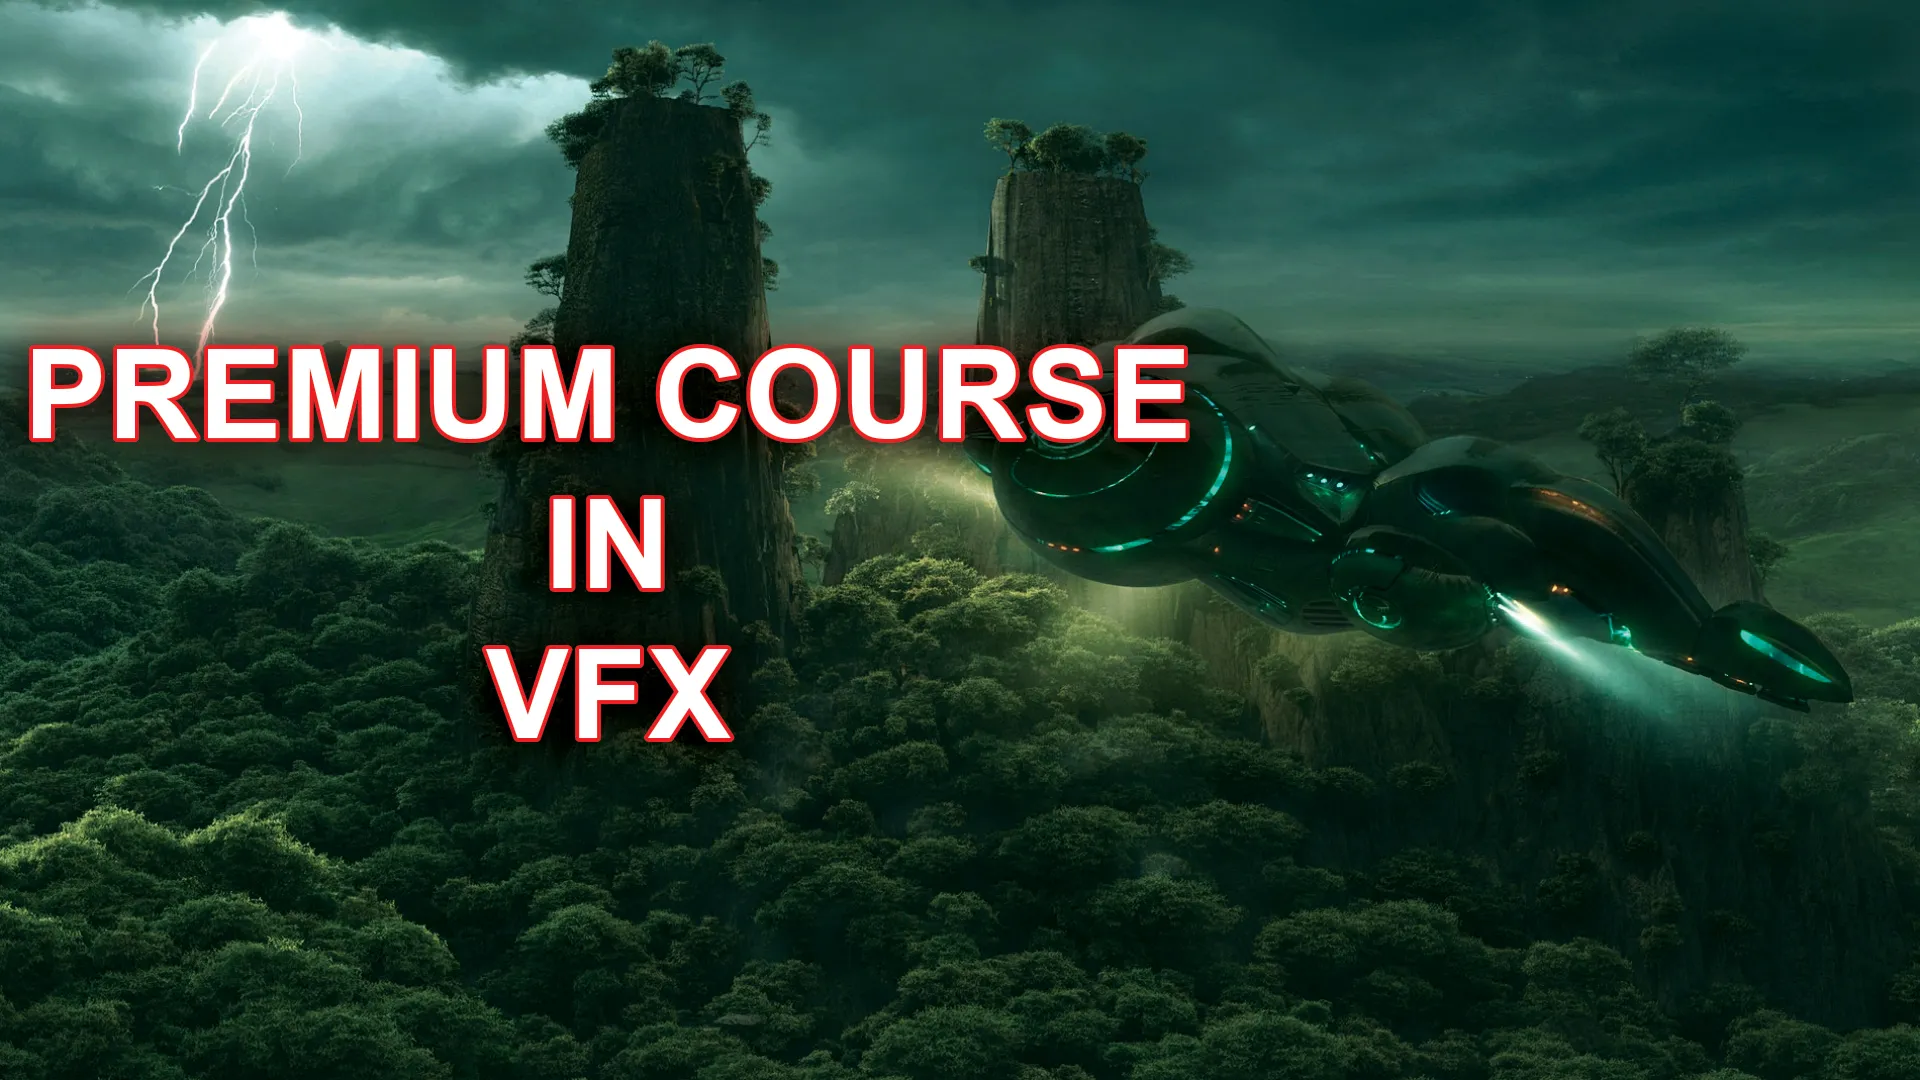 Premium vfx Course in pune